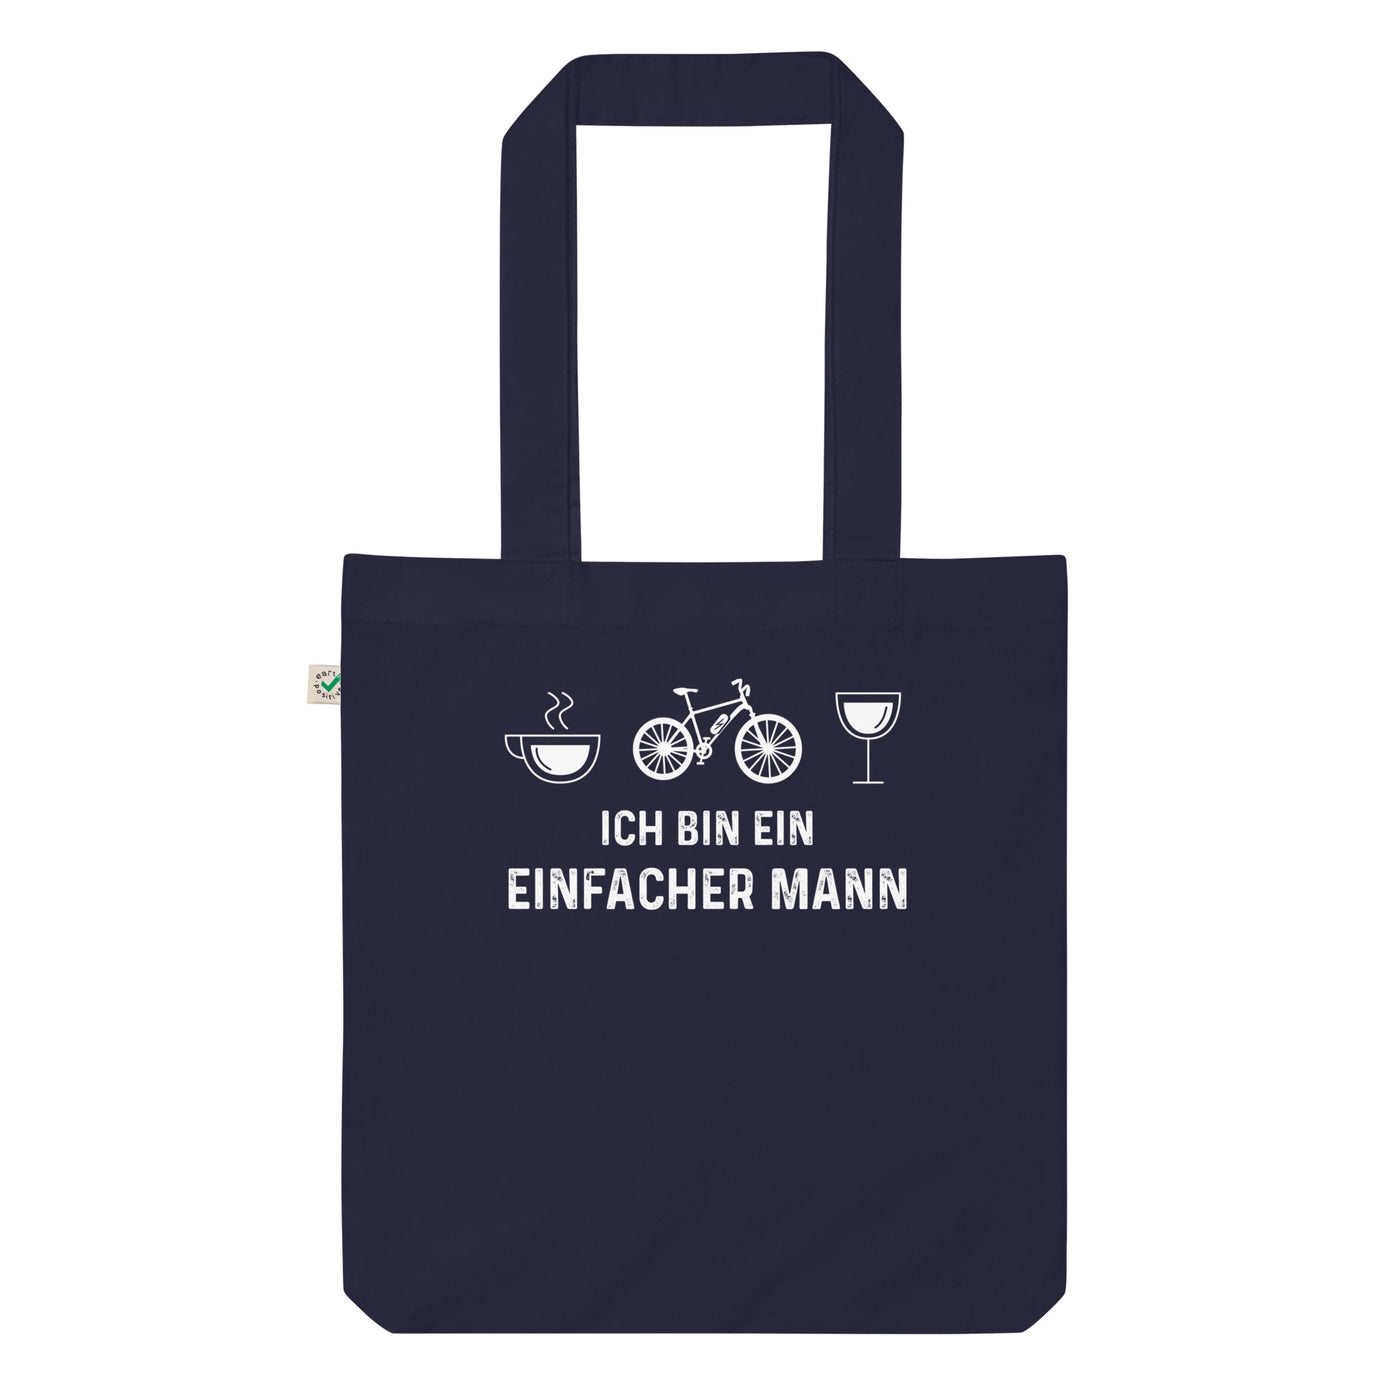 Ich Bin Ein Einfacher Mann - Organic Einkaufstasche e-bike Navy